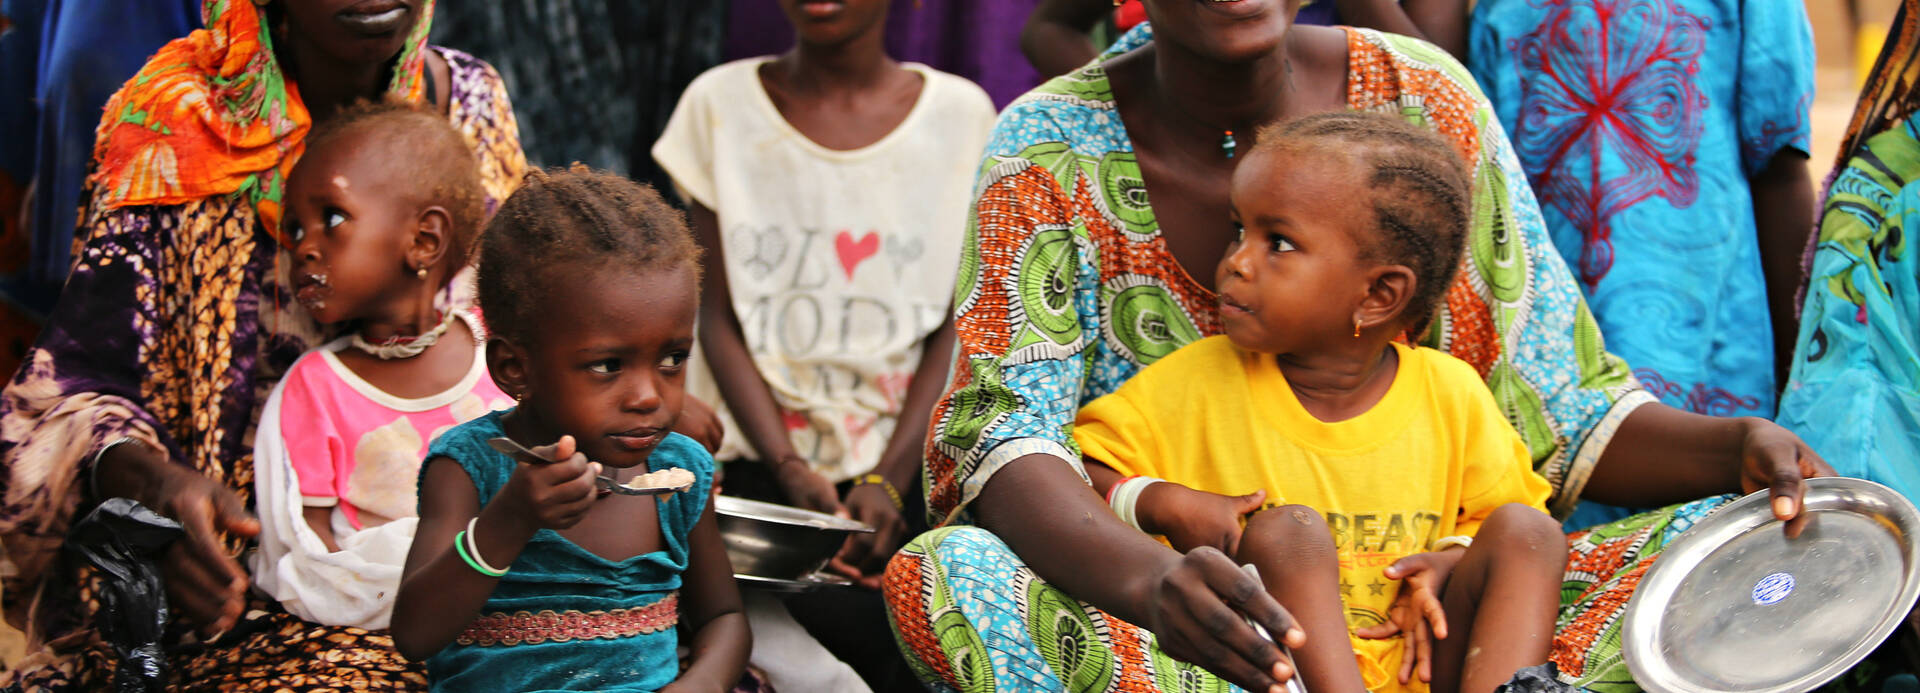 Ernährungsprogramm von Aktion gegen den Hunger im Senegal.